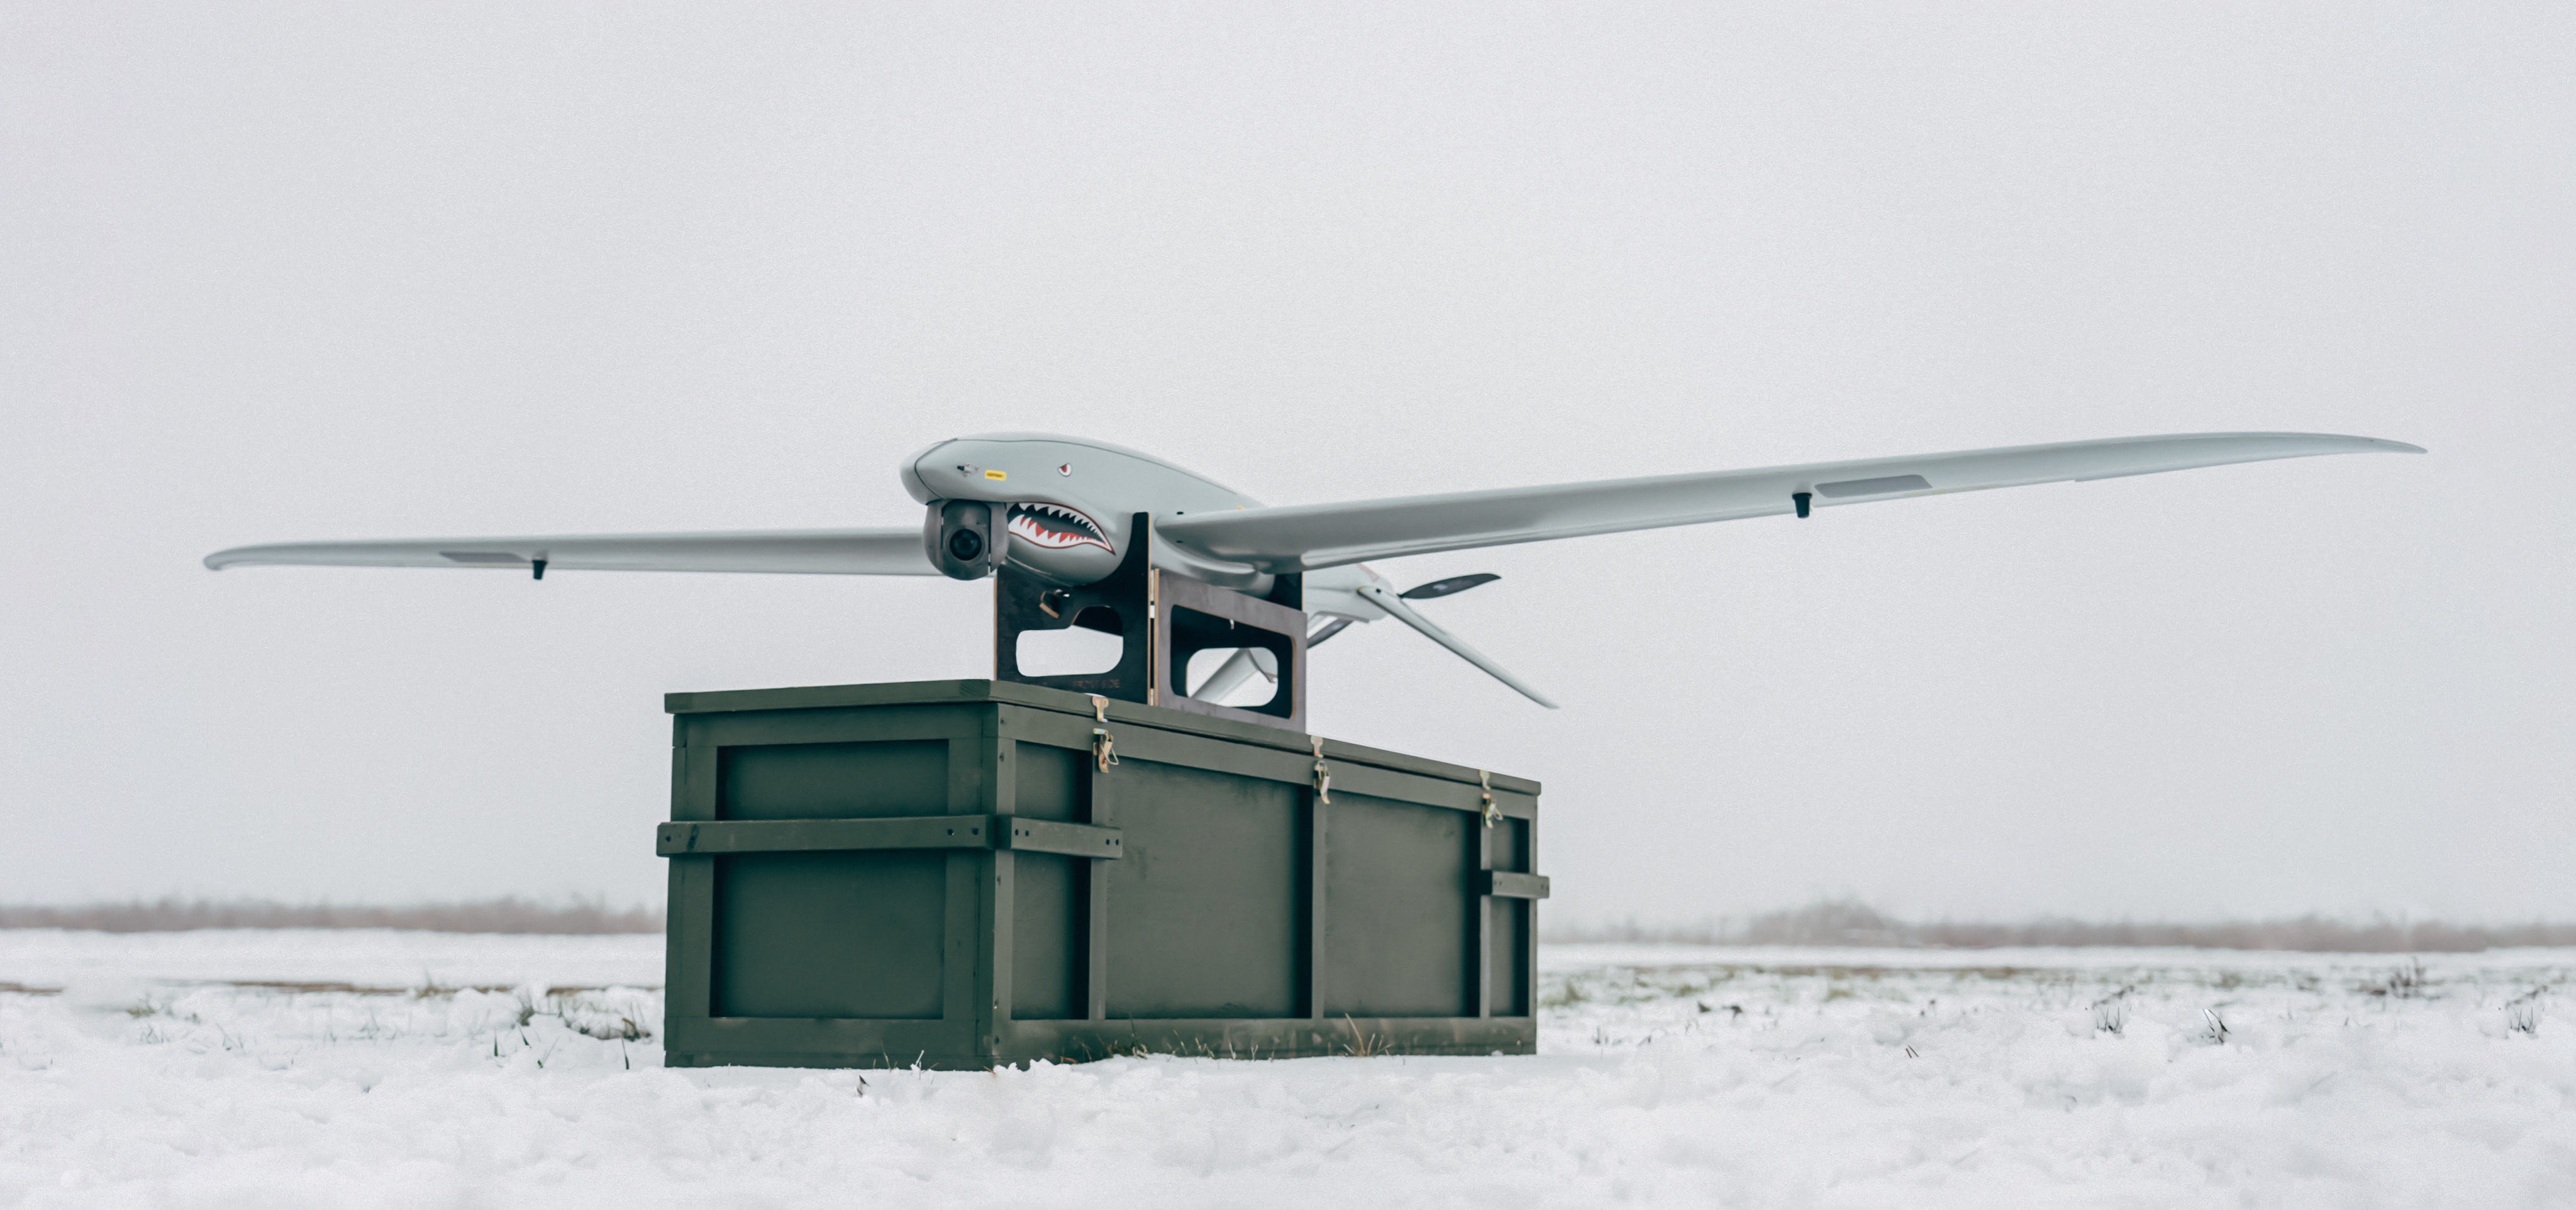 Ukrspecsystems a mis à niveau le drone de reconnaissance ukrainien SHARK, il a obtenu des ailes plus longues et une plus grande autonomie.